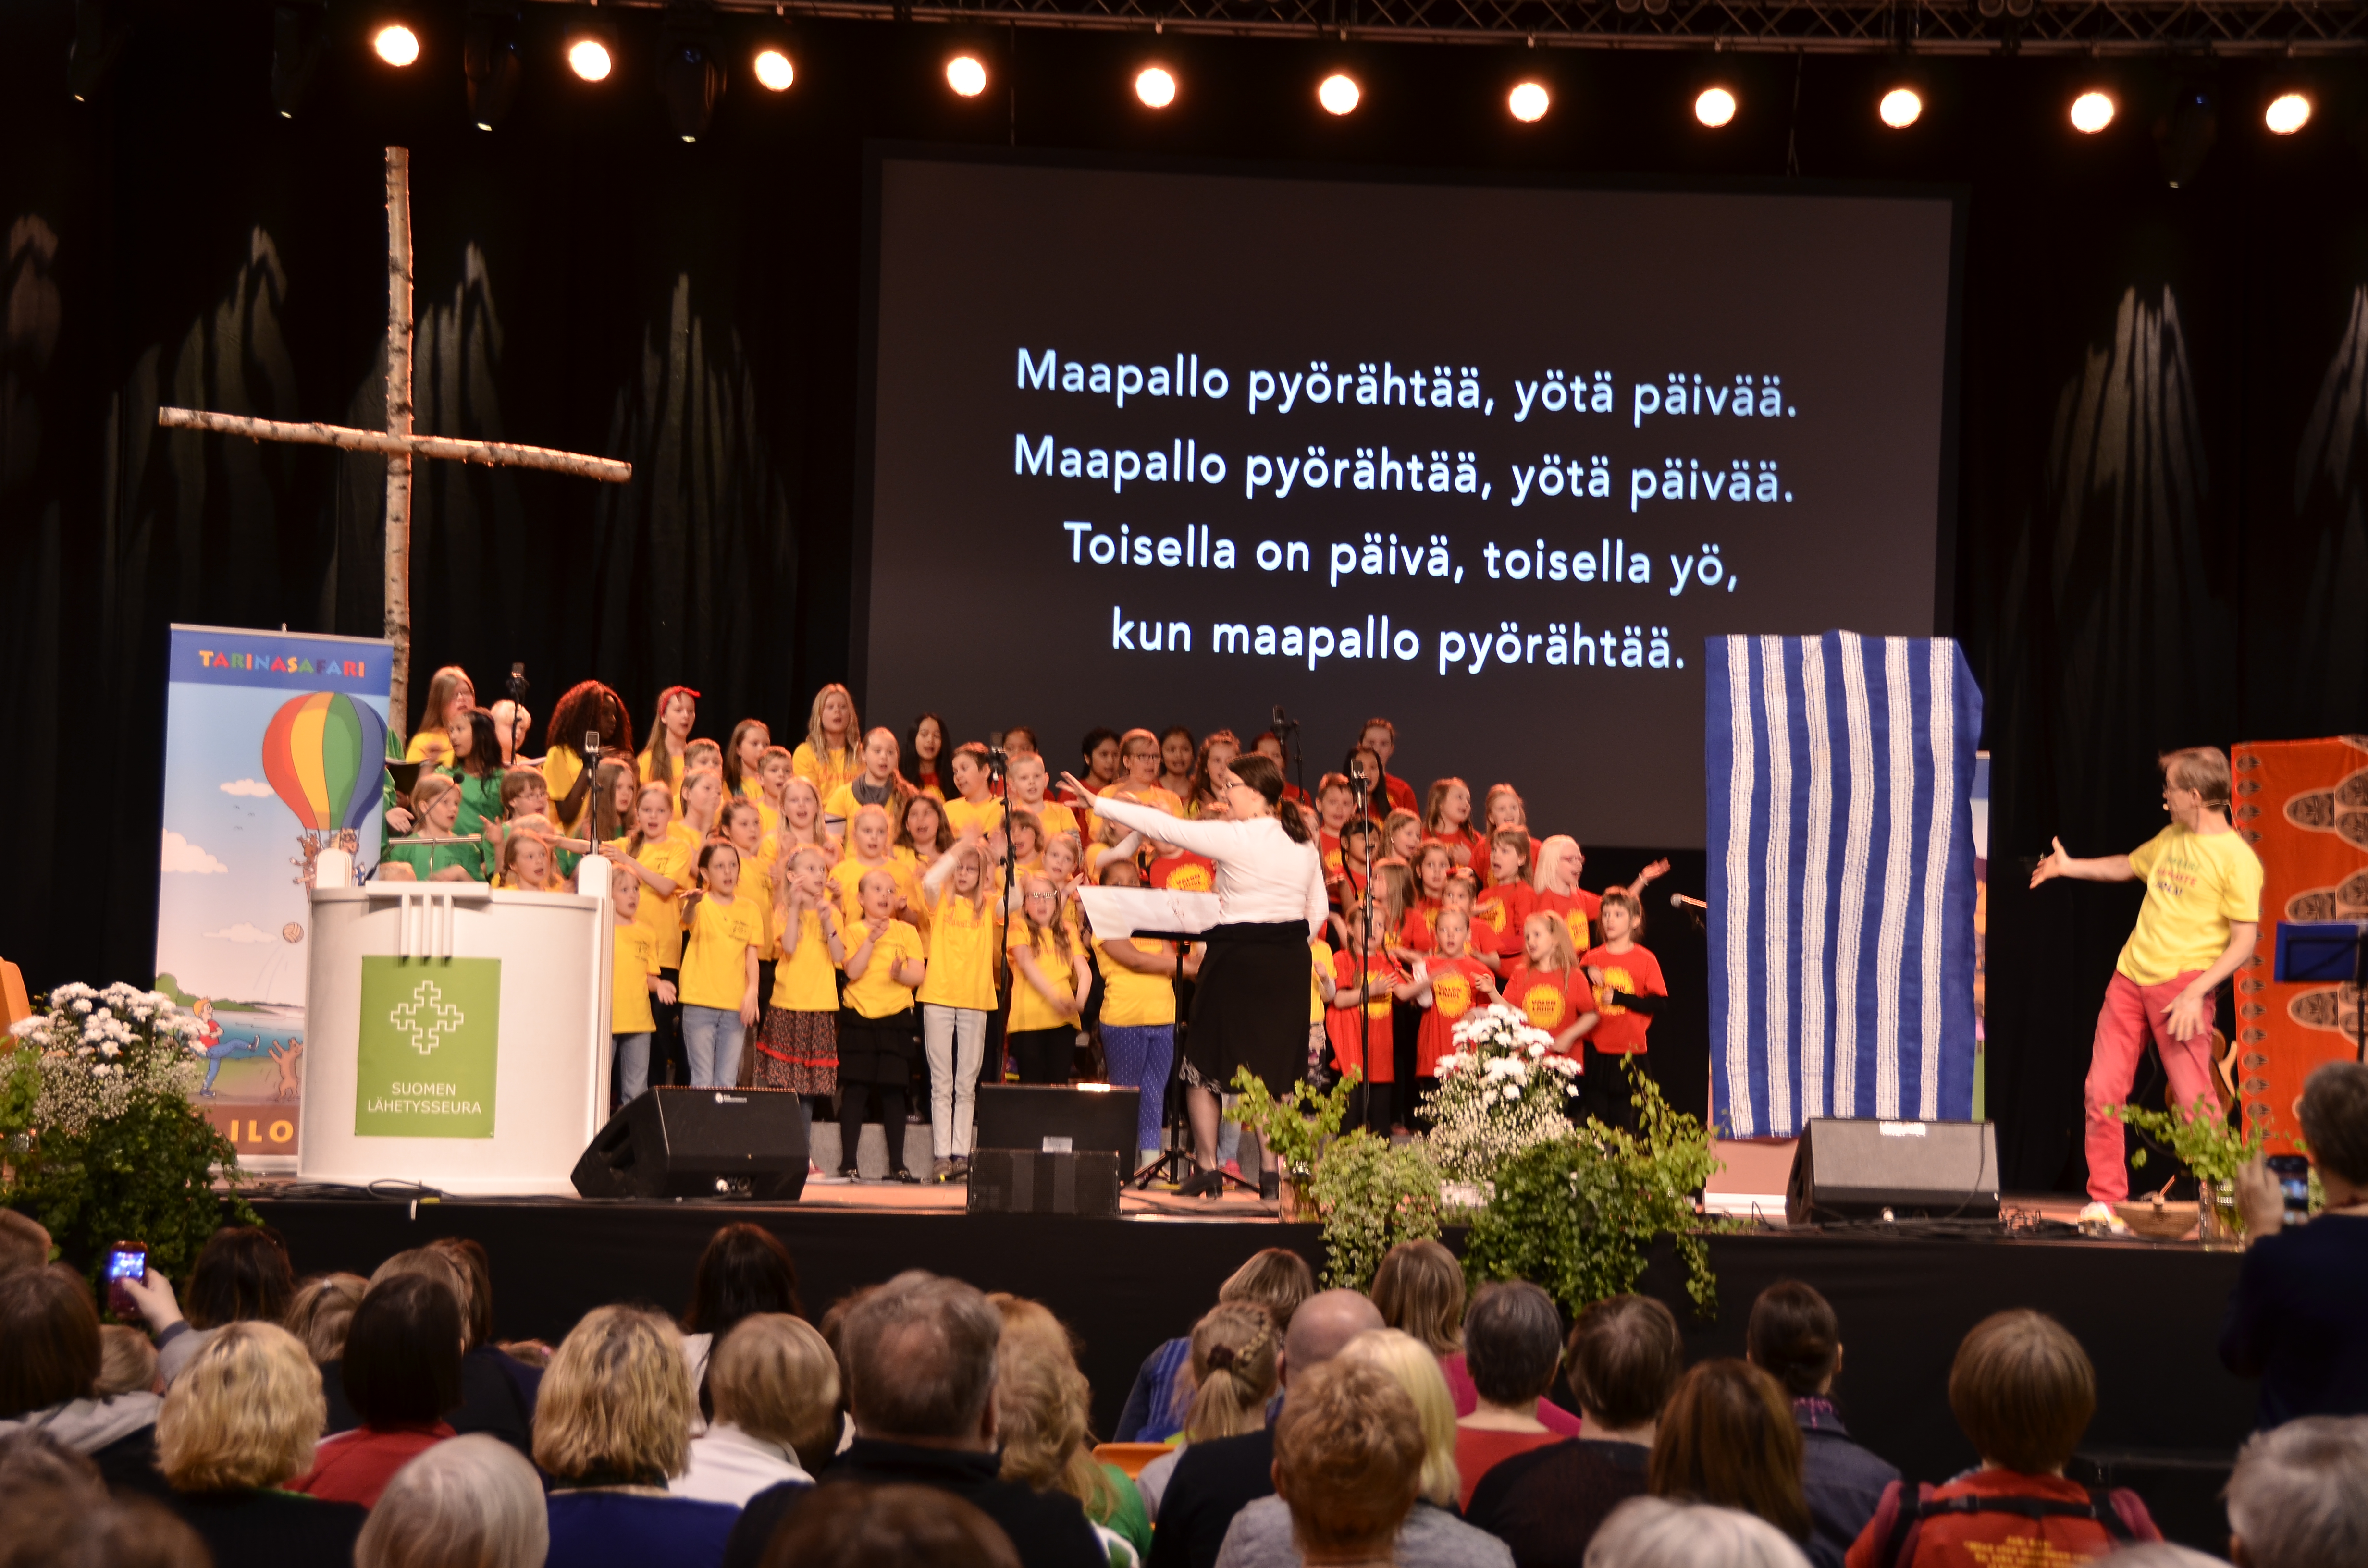 Jukka Salmisen Tarinasafari kertoi lähetystyöstä lauluin ja tarinoin niin lapsille kuin vähän varttuneemmillekin lähetysjuhlavieraille.